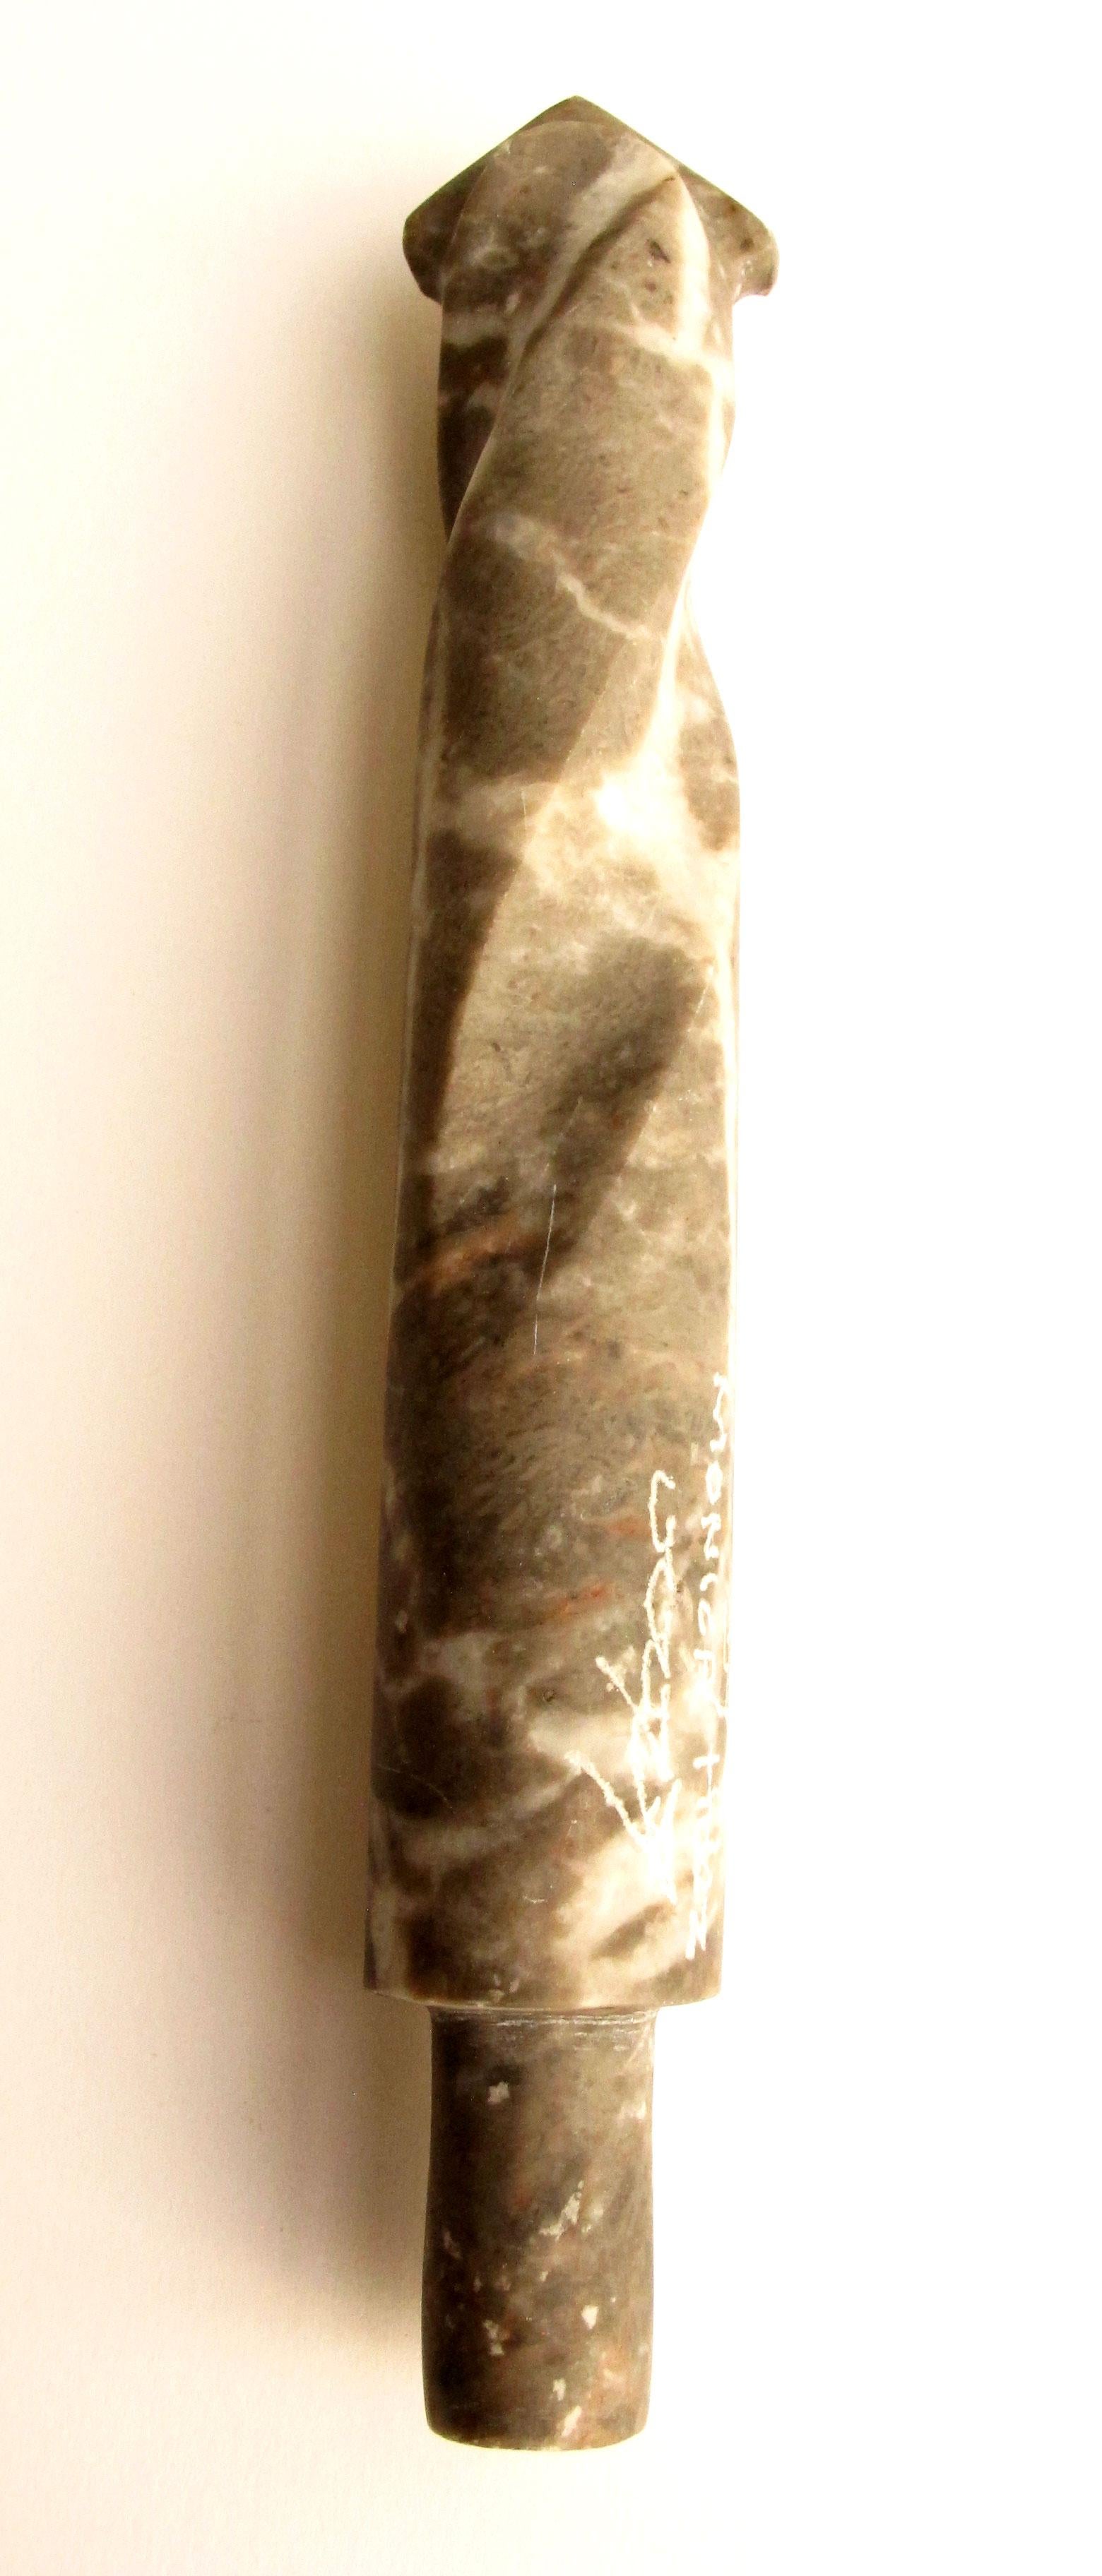 Drill Bit von KARTEL - einzigartige handgeschnitzte Marmorskulptur - glatte Oberfläche